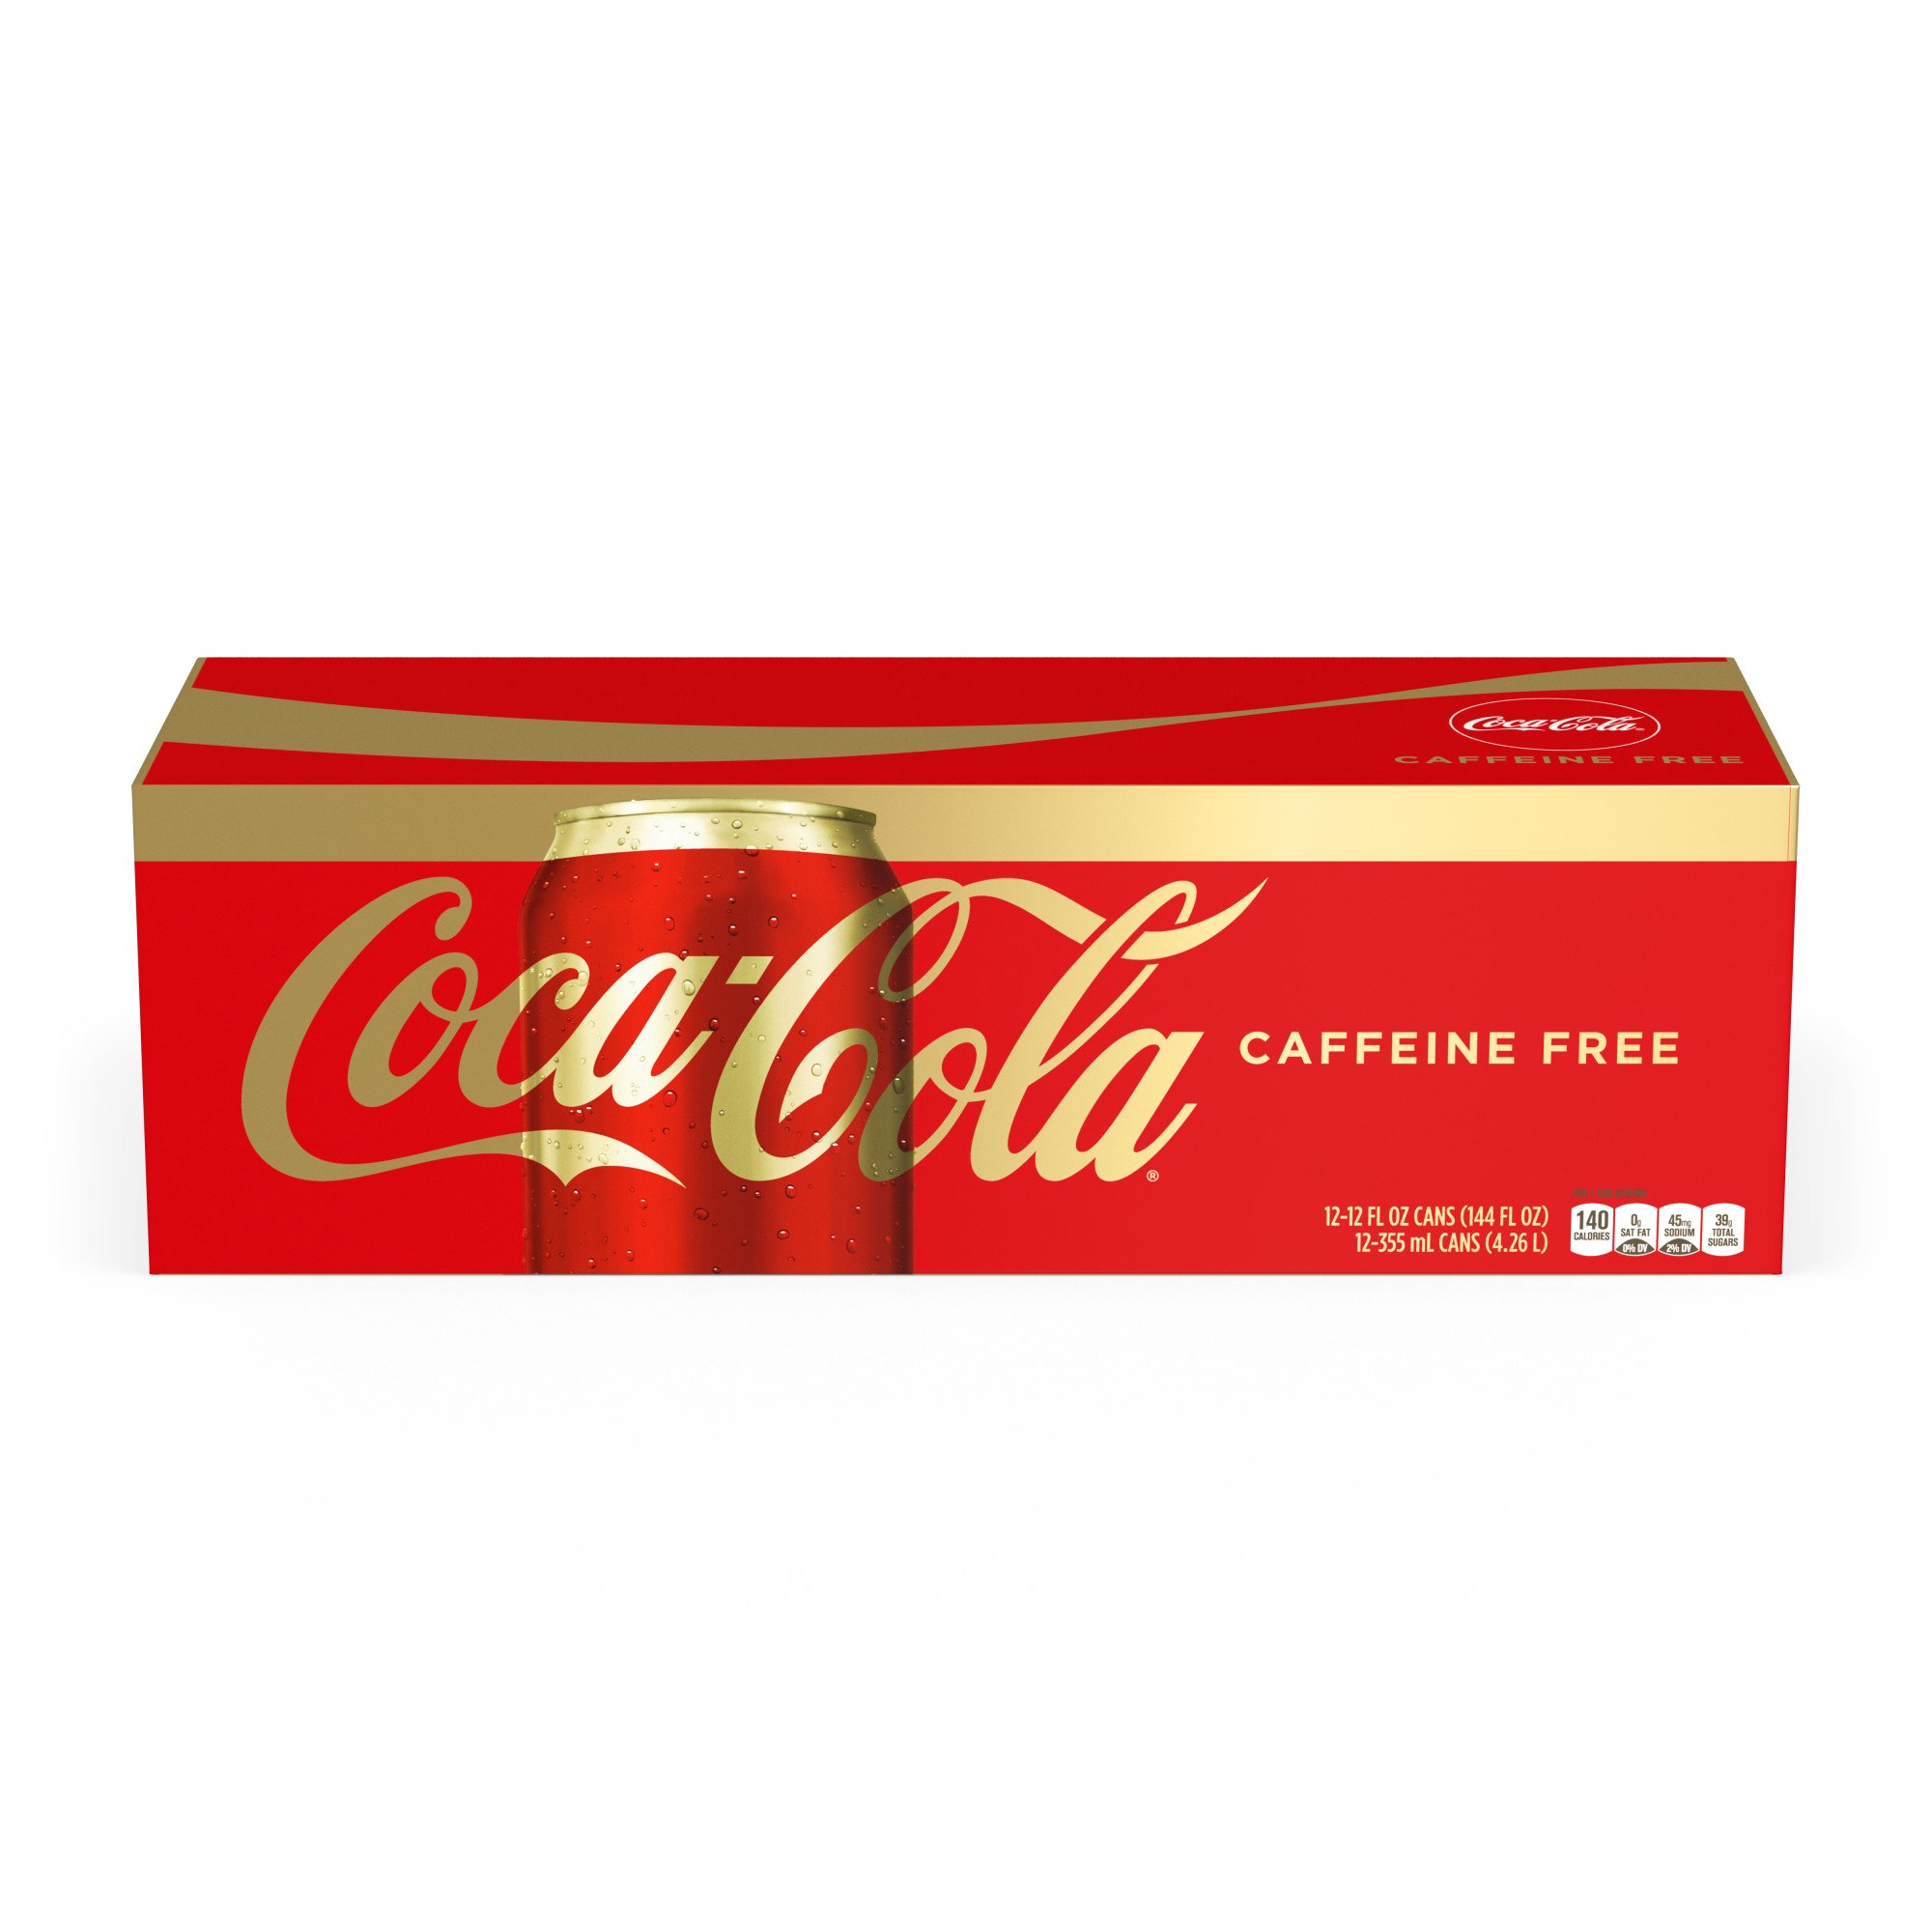 Coca Cola Caffeine Free Classic Coke 12 Oz Cans Shop Soda At H E B